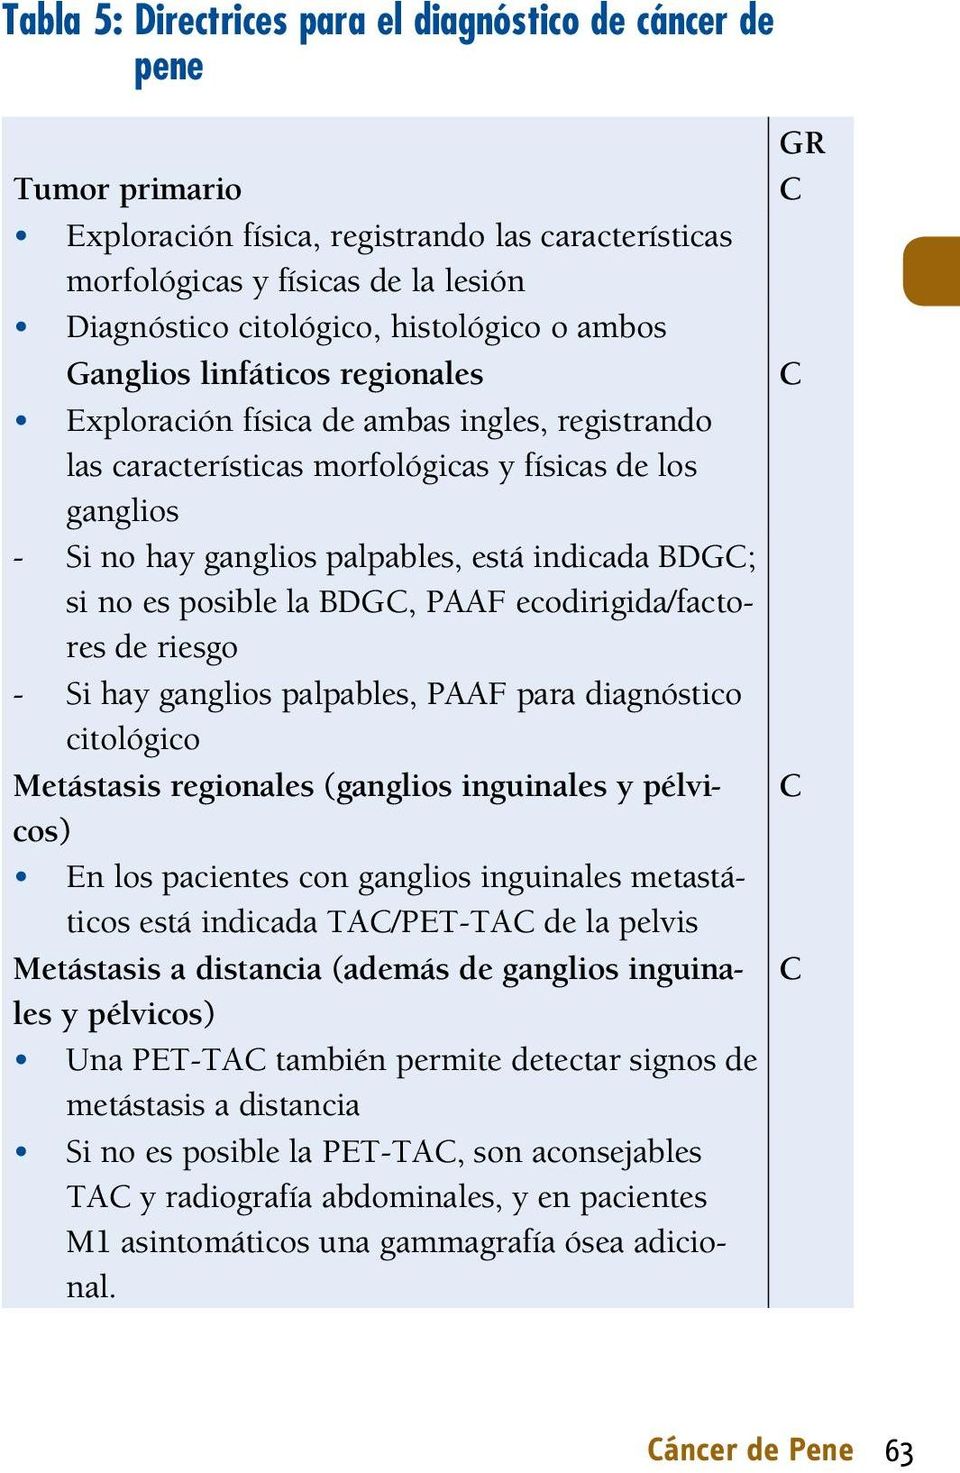 no es posible la DGC, PAAF ecodirigida/factores de riesgo - Si hay ganglios palpables, PAAF para diagnóstico citológico Metástasis regionales (ganglios inguinales y pélvicos) En los pacientes con